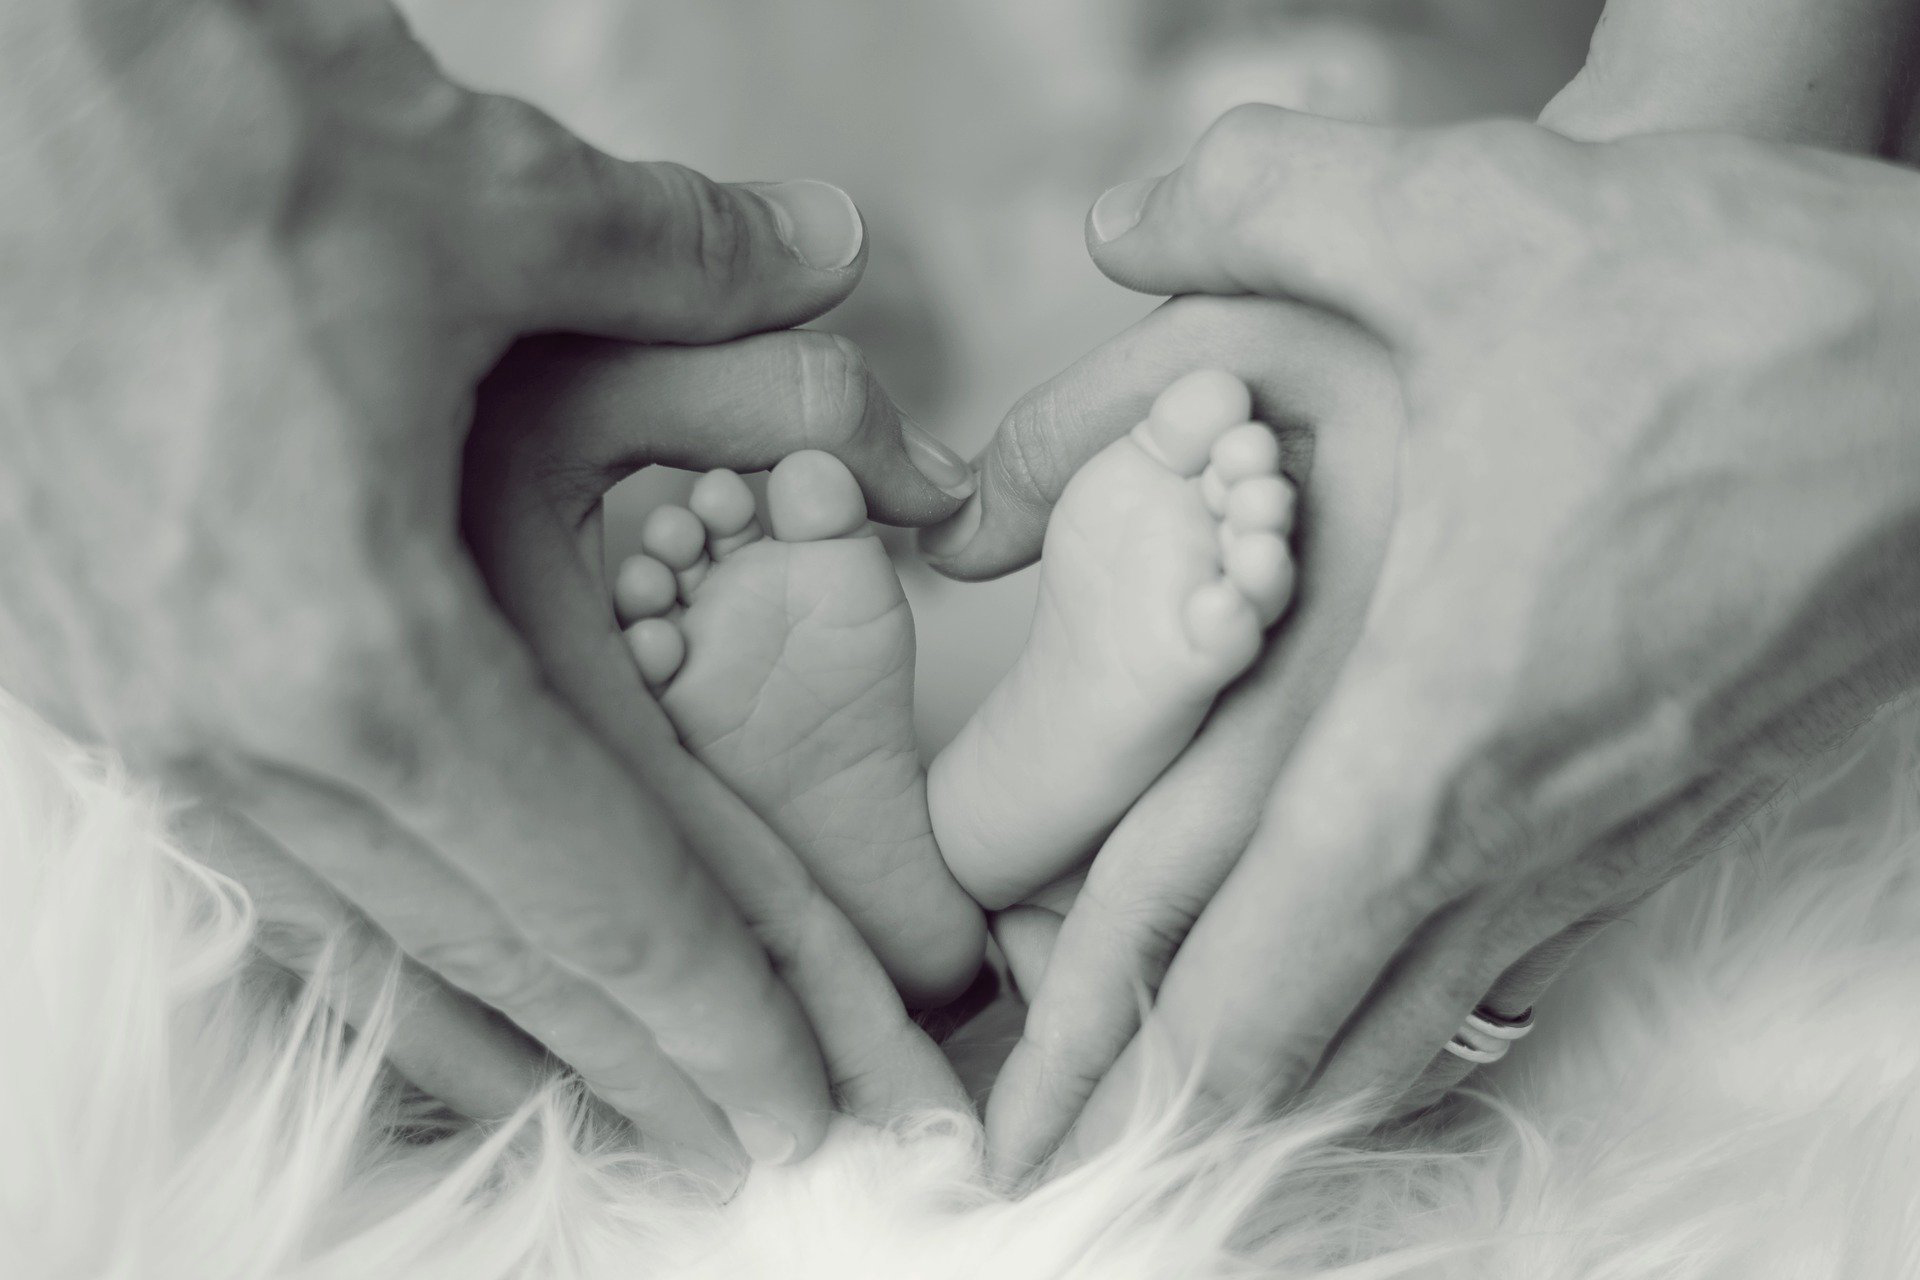 Hände von Erwachsenen umschließen die Füße eines Neugeborenen / Adult hands enclose the feet of a newborn baby